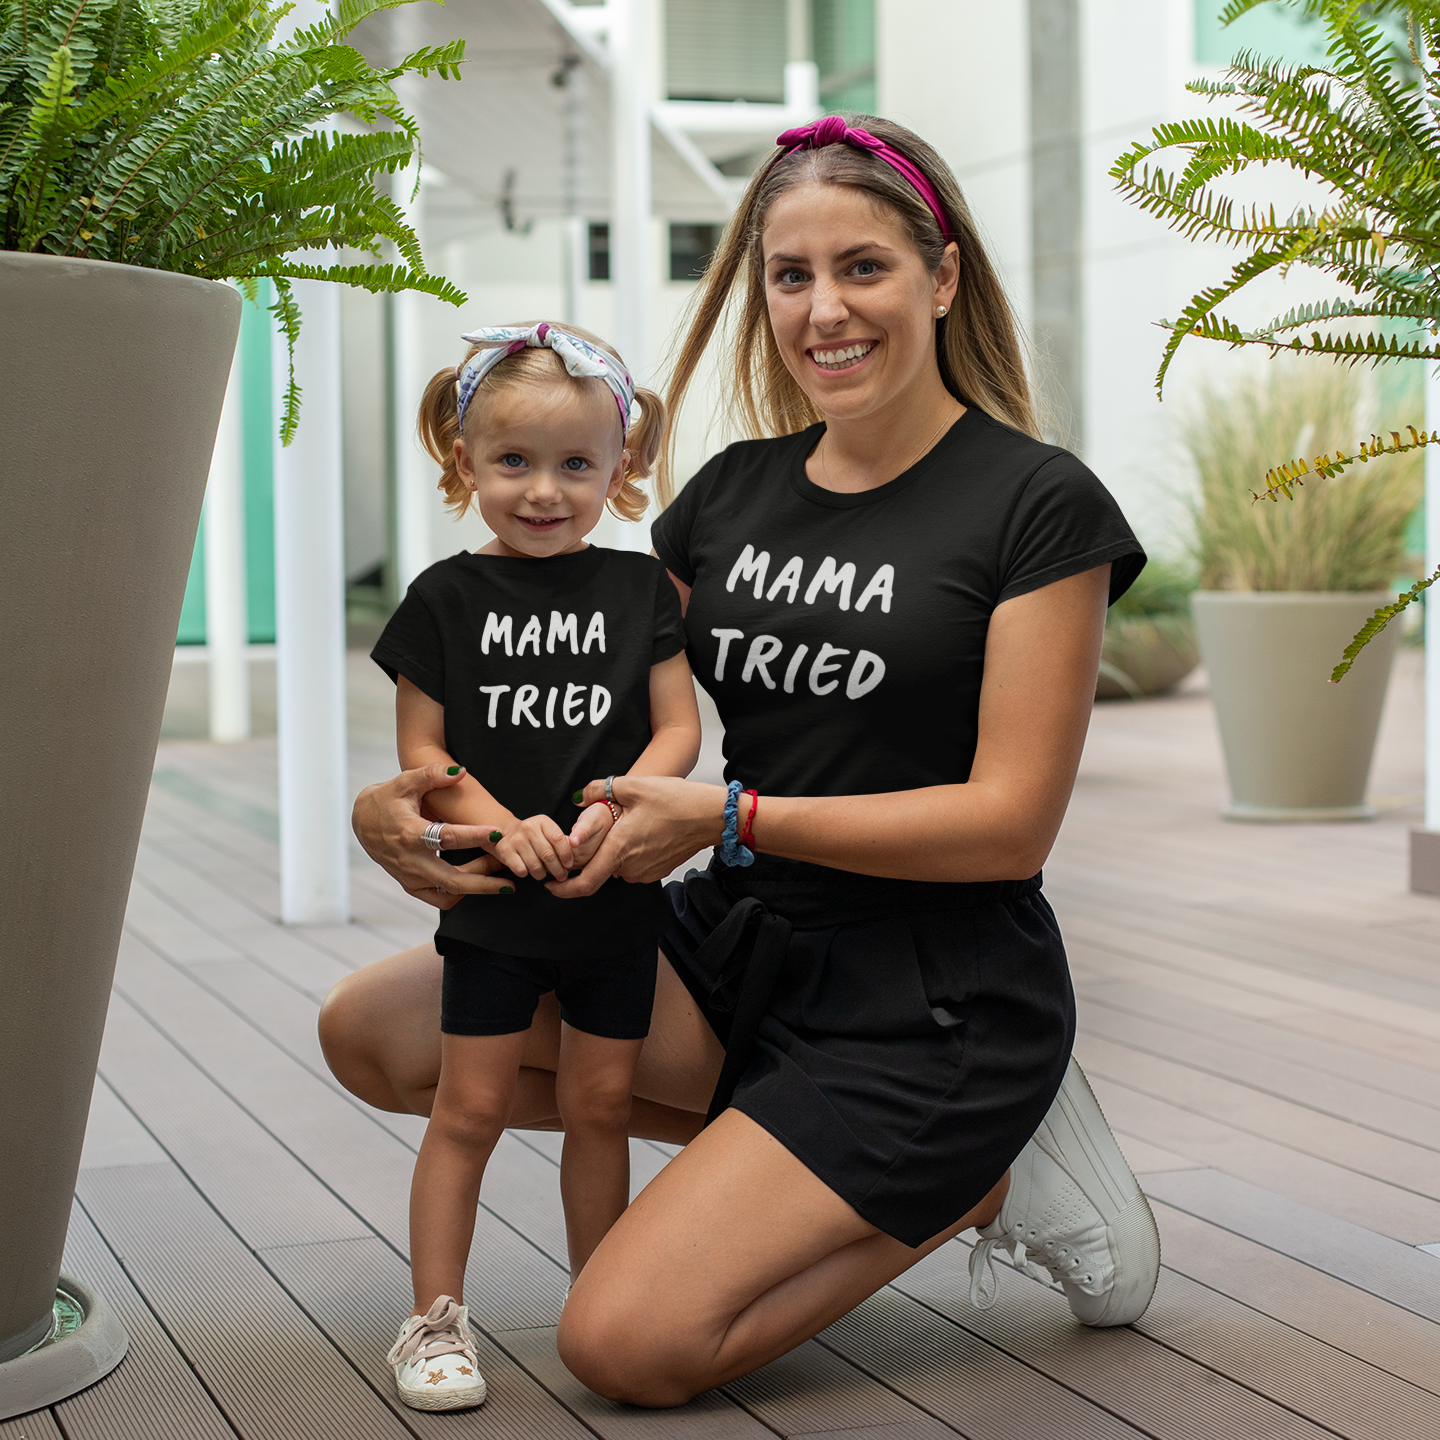 'Mama tried' kids shortsleeve shirt